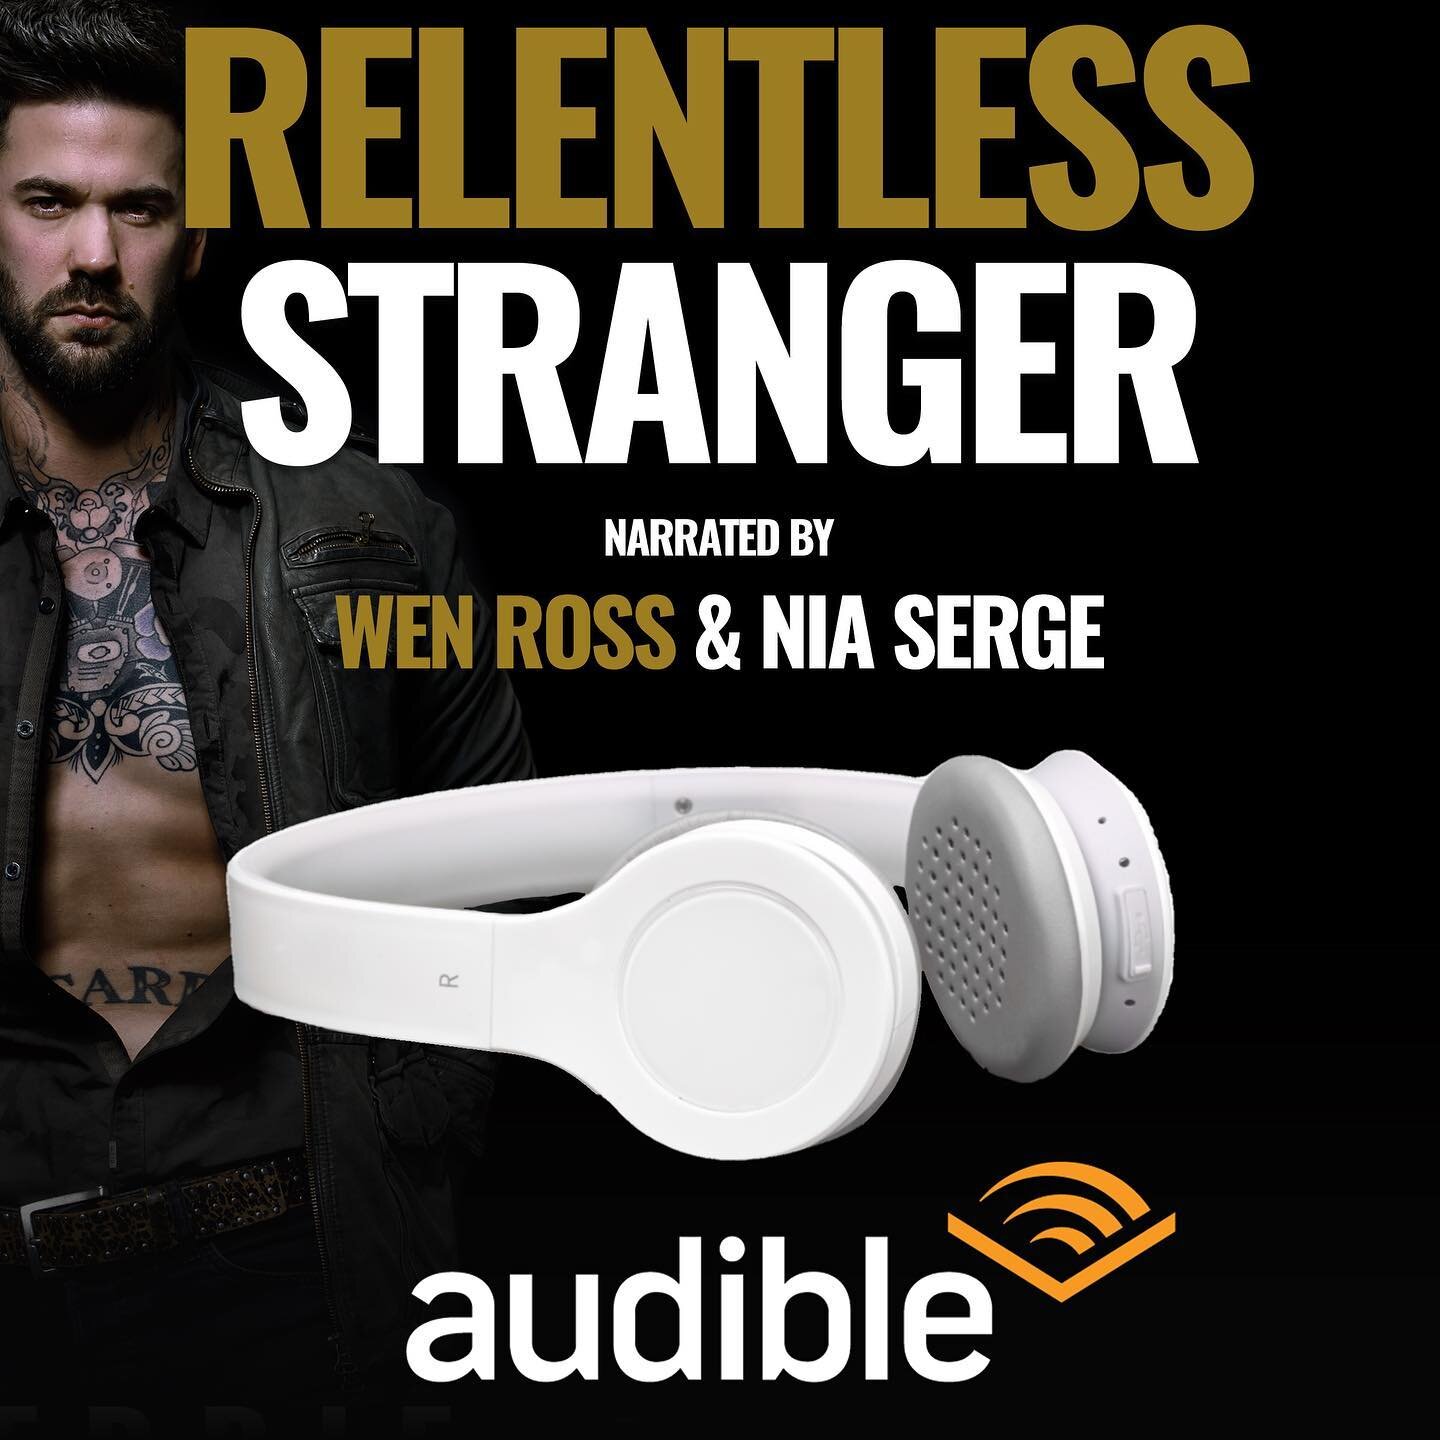 Eep! Relentless Stranger is coming to audio!! 
#audiobooks #audiobookstagram #audiobooknarratorsrock #audiobooklove #audiobooklover #comingsoon #romanceaudiobooks #bwwmromancenovel #romancenovel